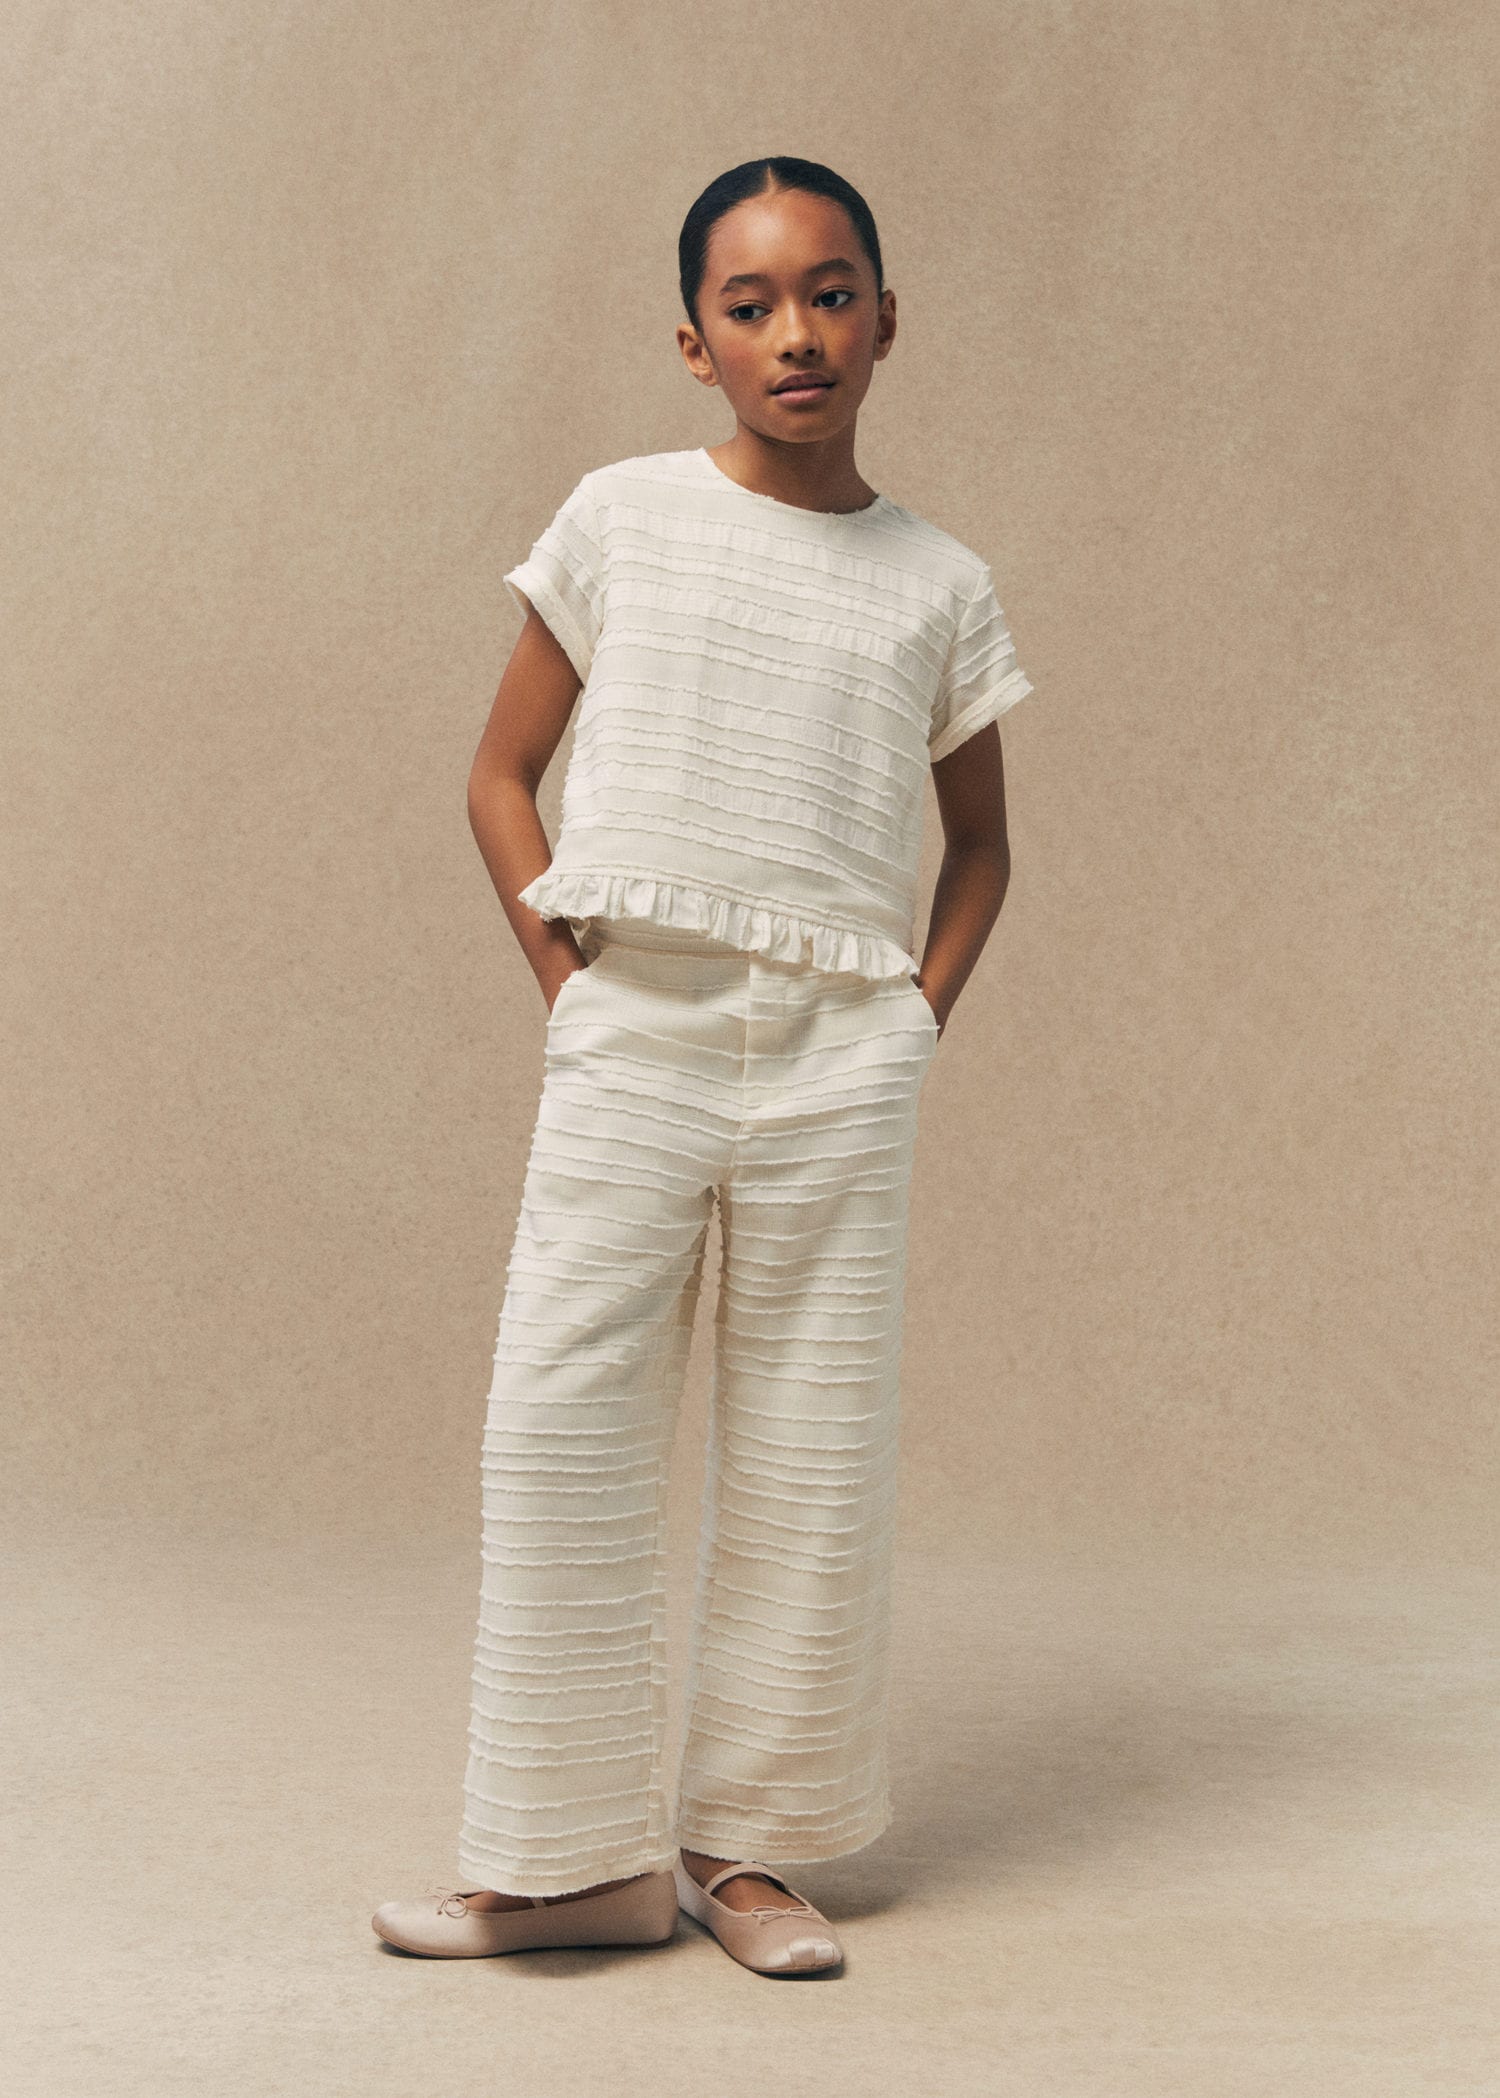 ITATI Drawstring Boys Pants. Comfortable for Kids. White Color.